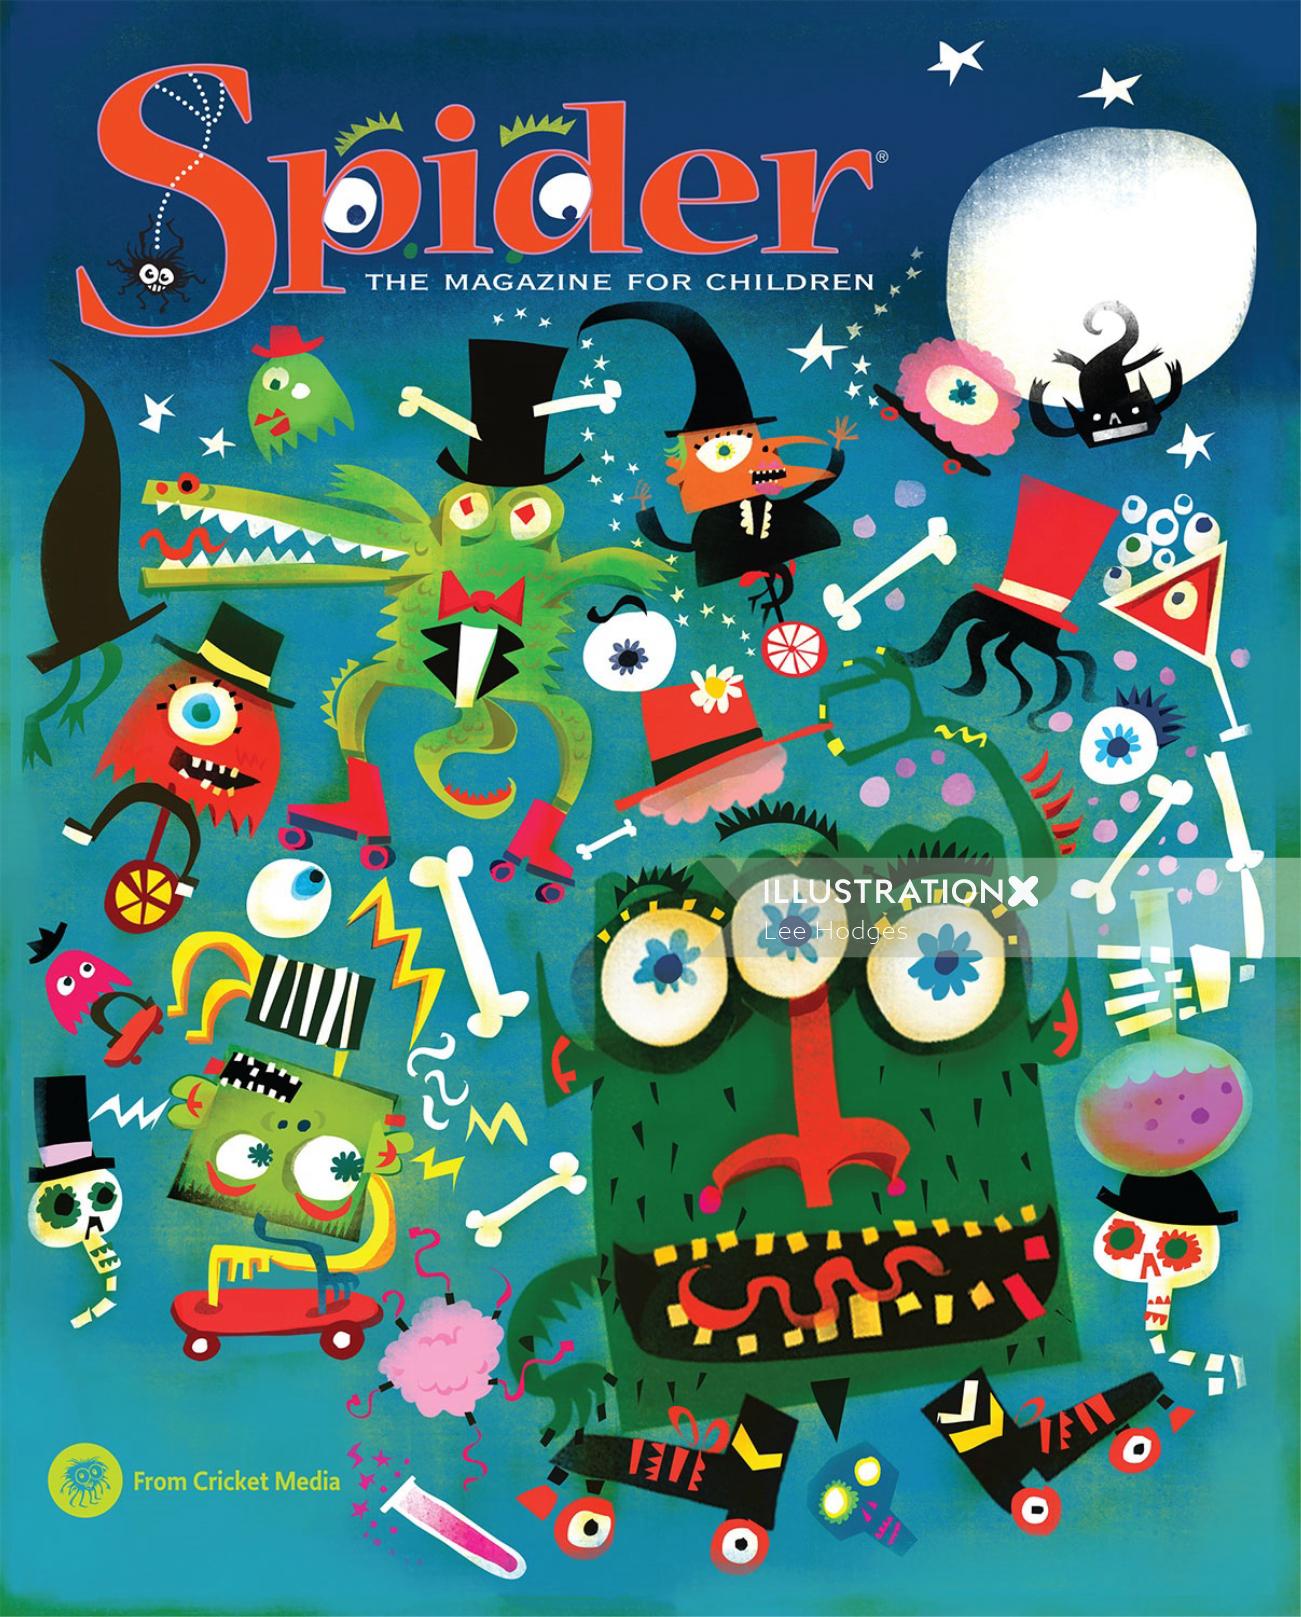 Poster design for Spider magazine for Children